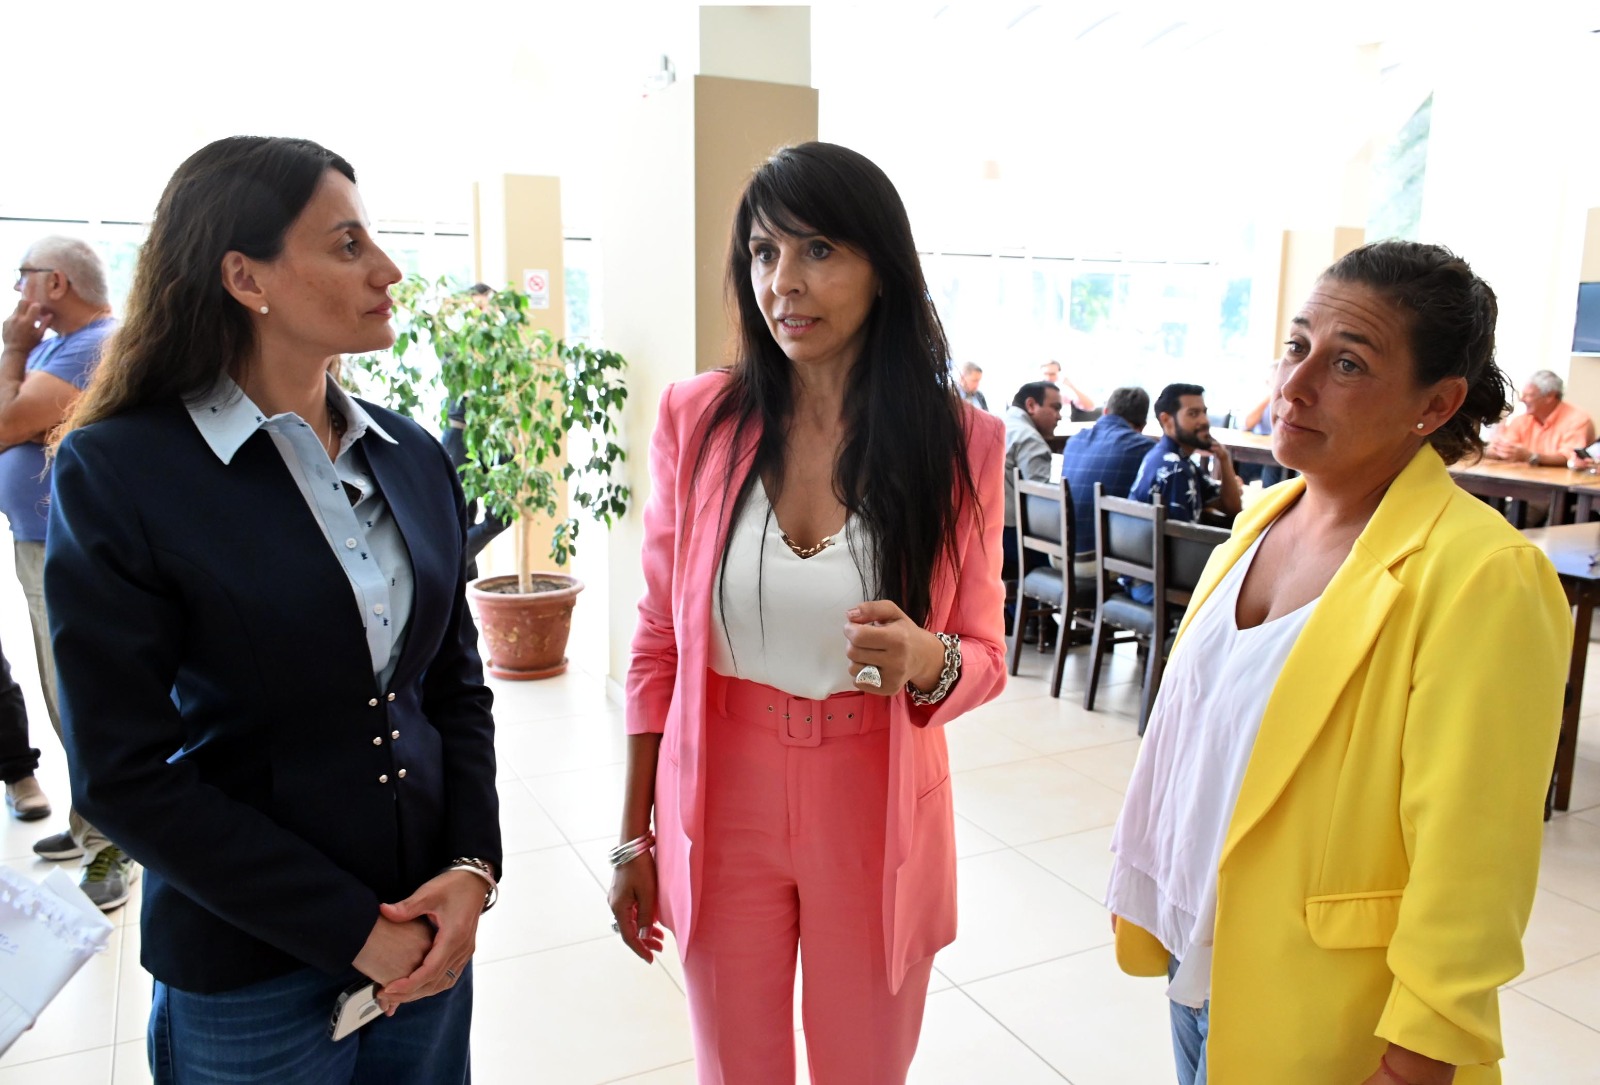 La diputada Villaverde anunció las designaciones de las dos primeras funcionarias nacionales en Río Negro. Foto: Marcelo Ochoa.